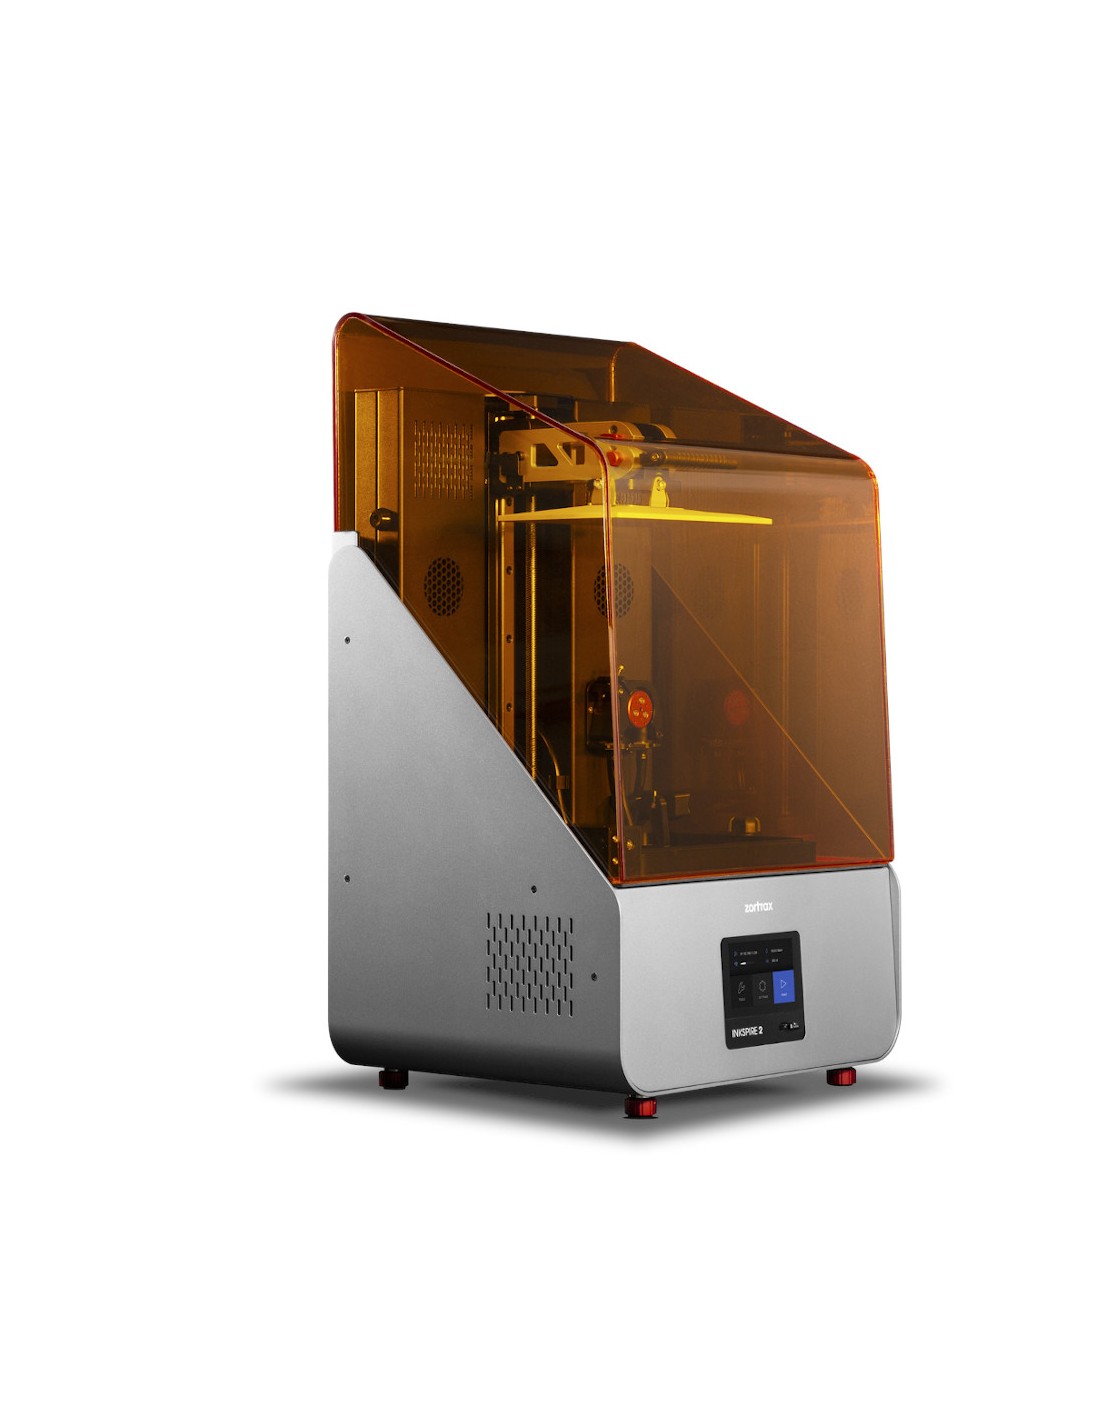 Zortrax Inkspire 2 - 3D Printer